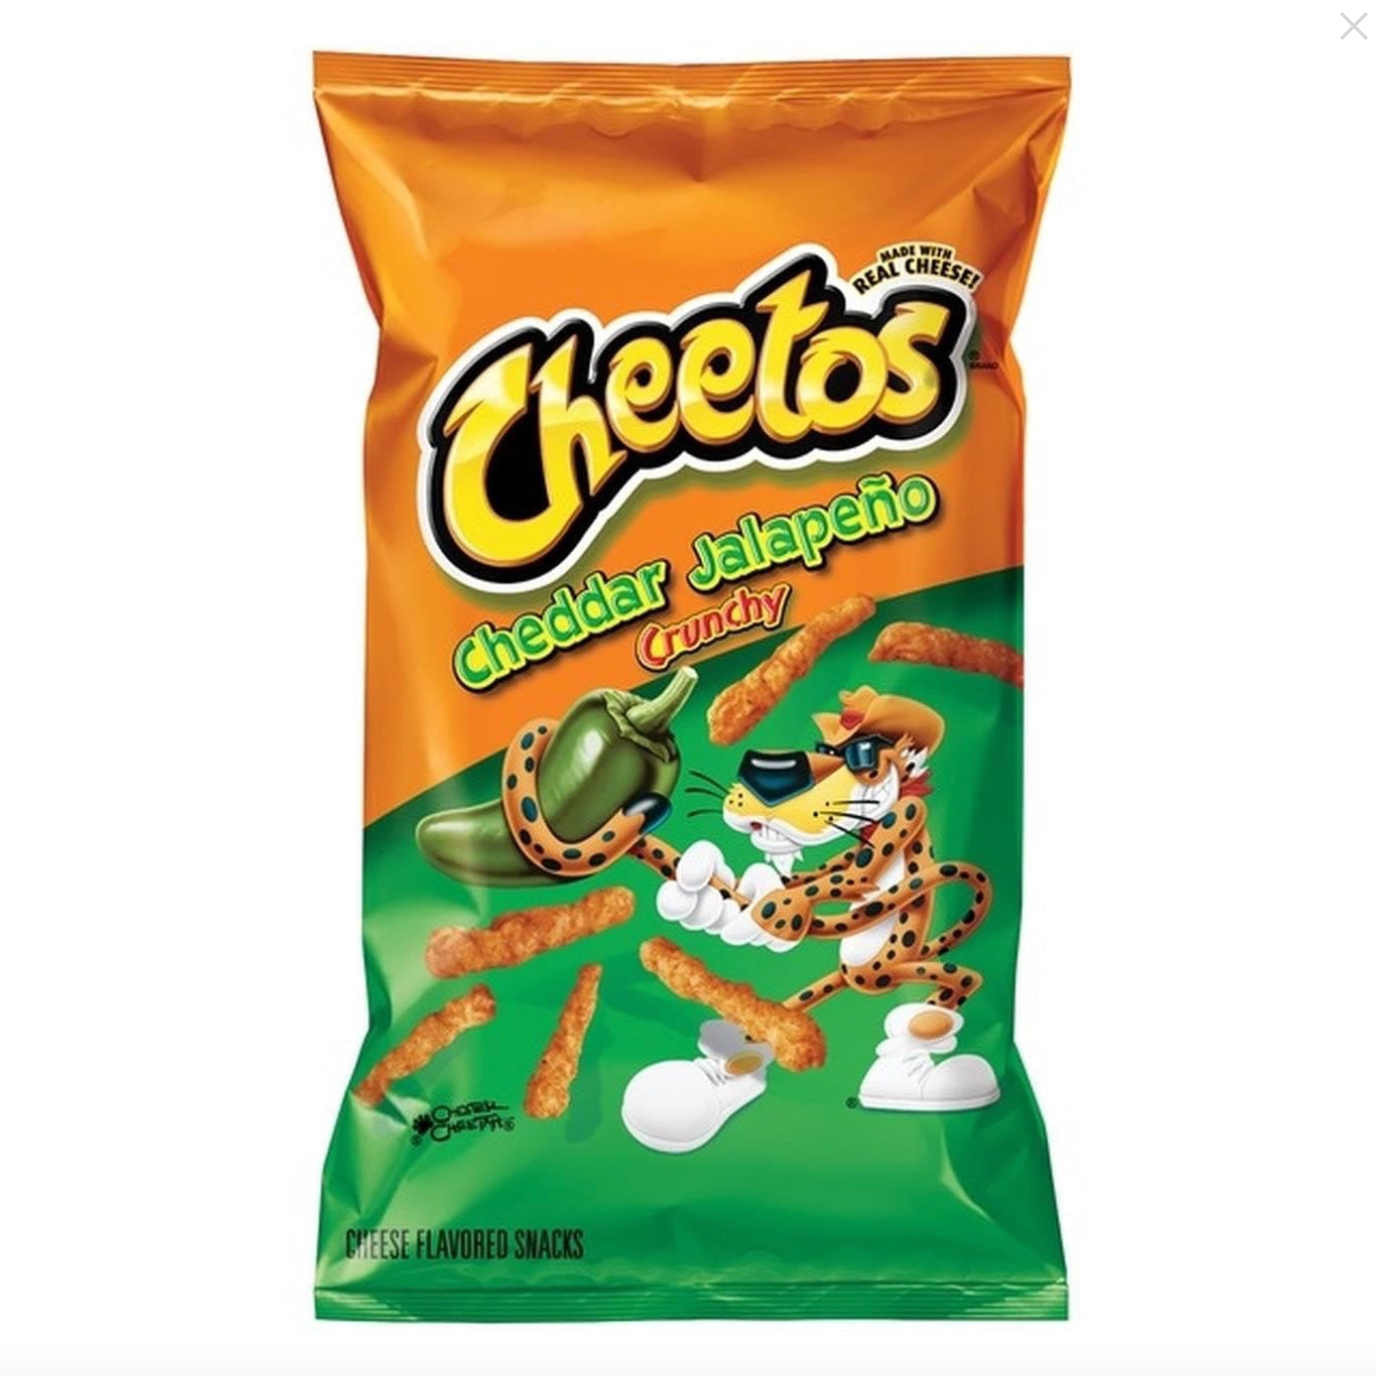 Cheetos - Cheddar Jalapeño